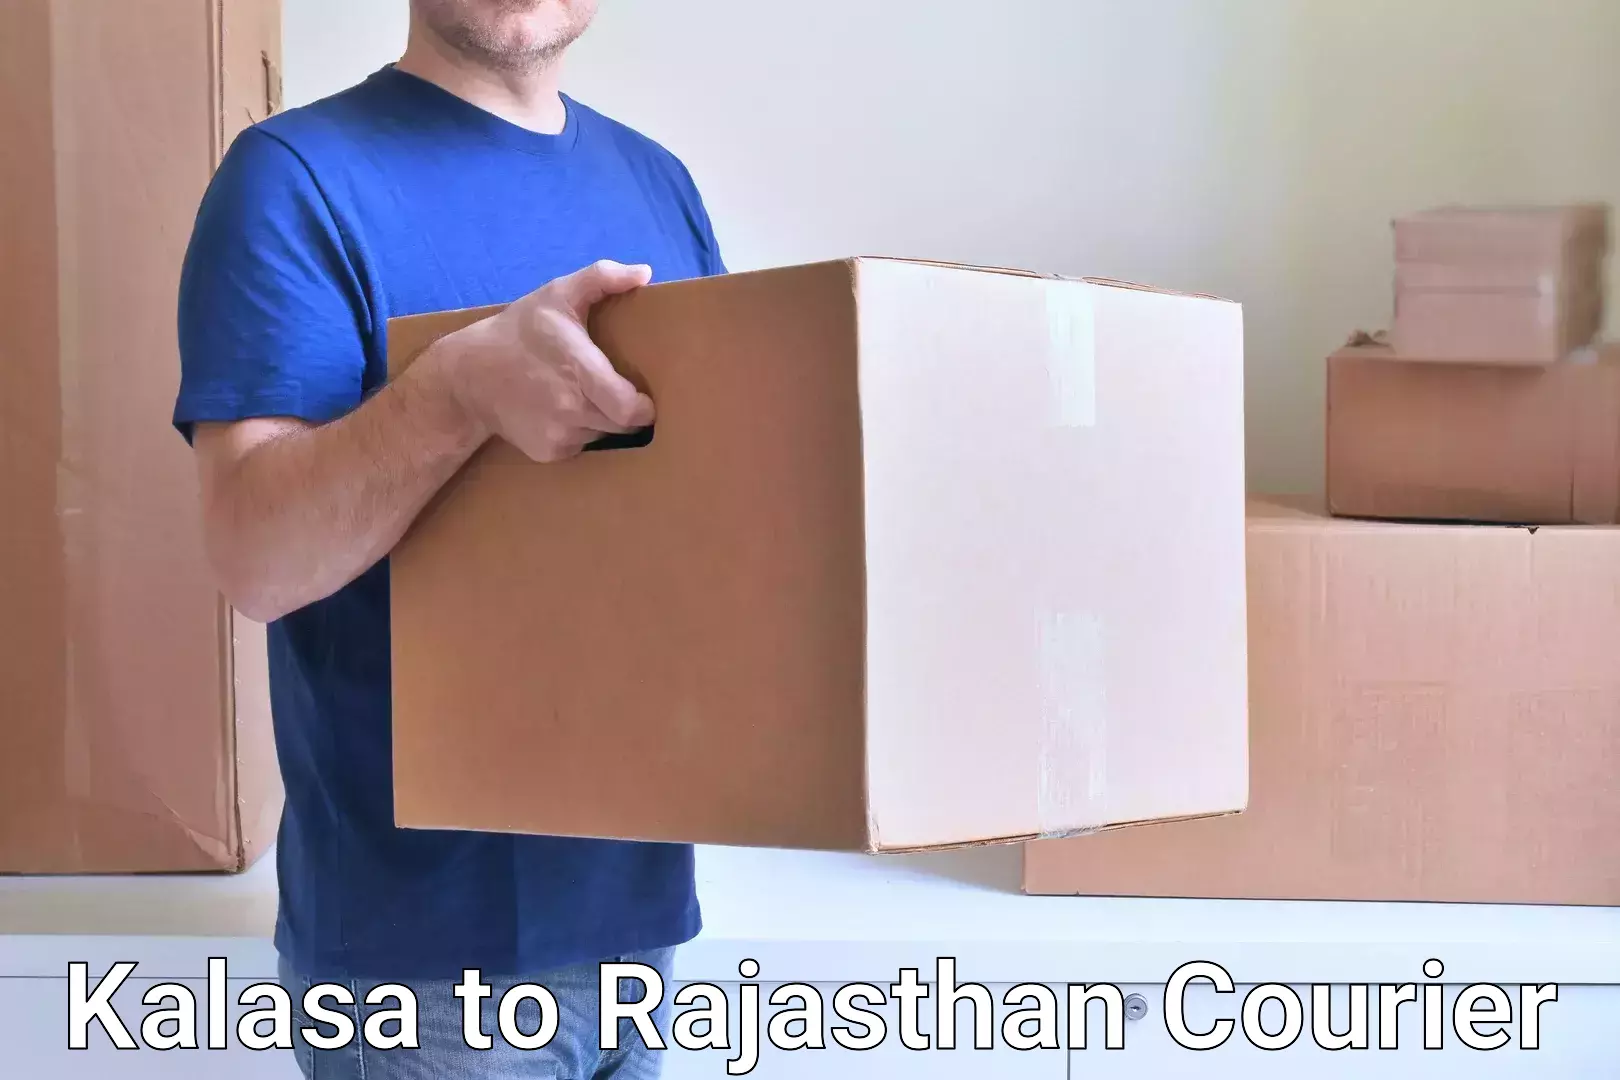 Modern courier technology Kalasa to Taranagar